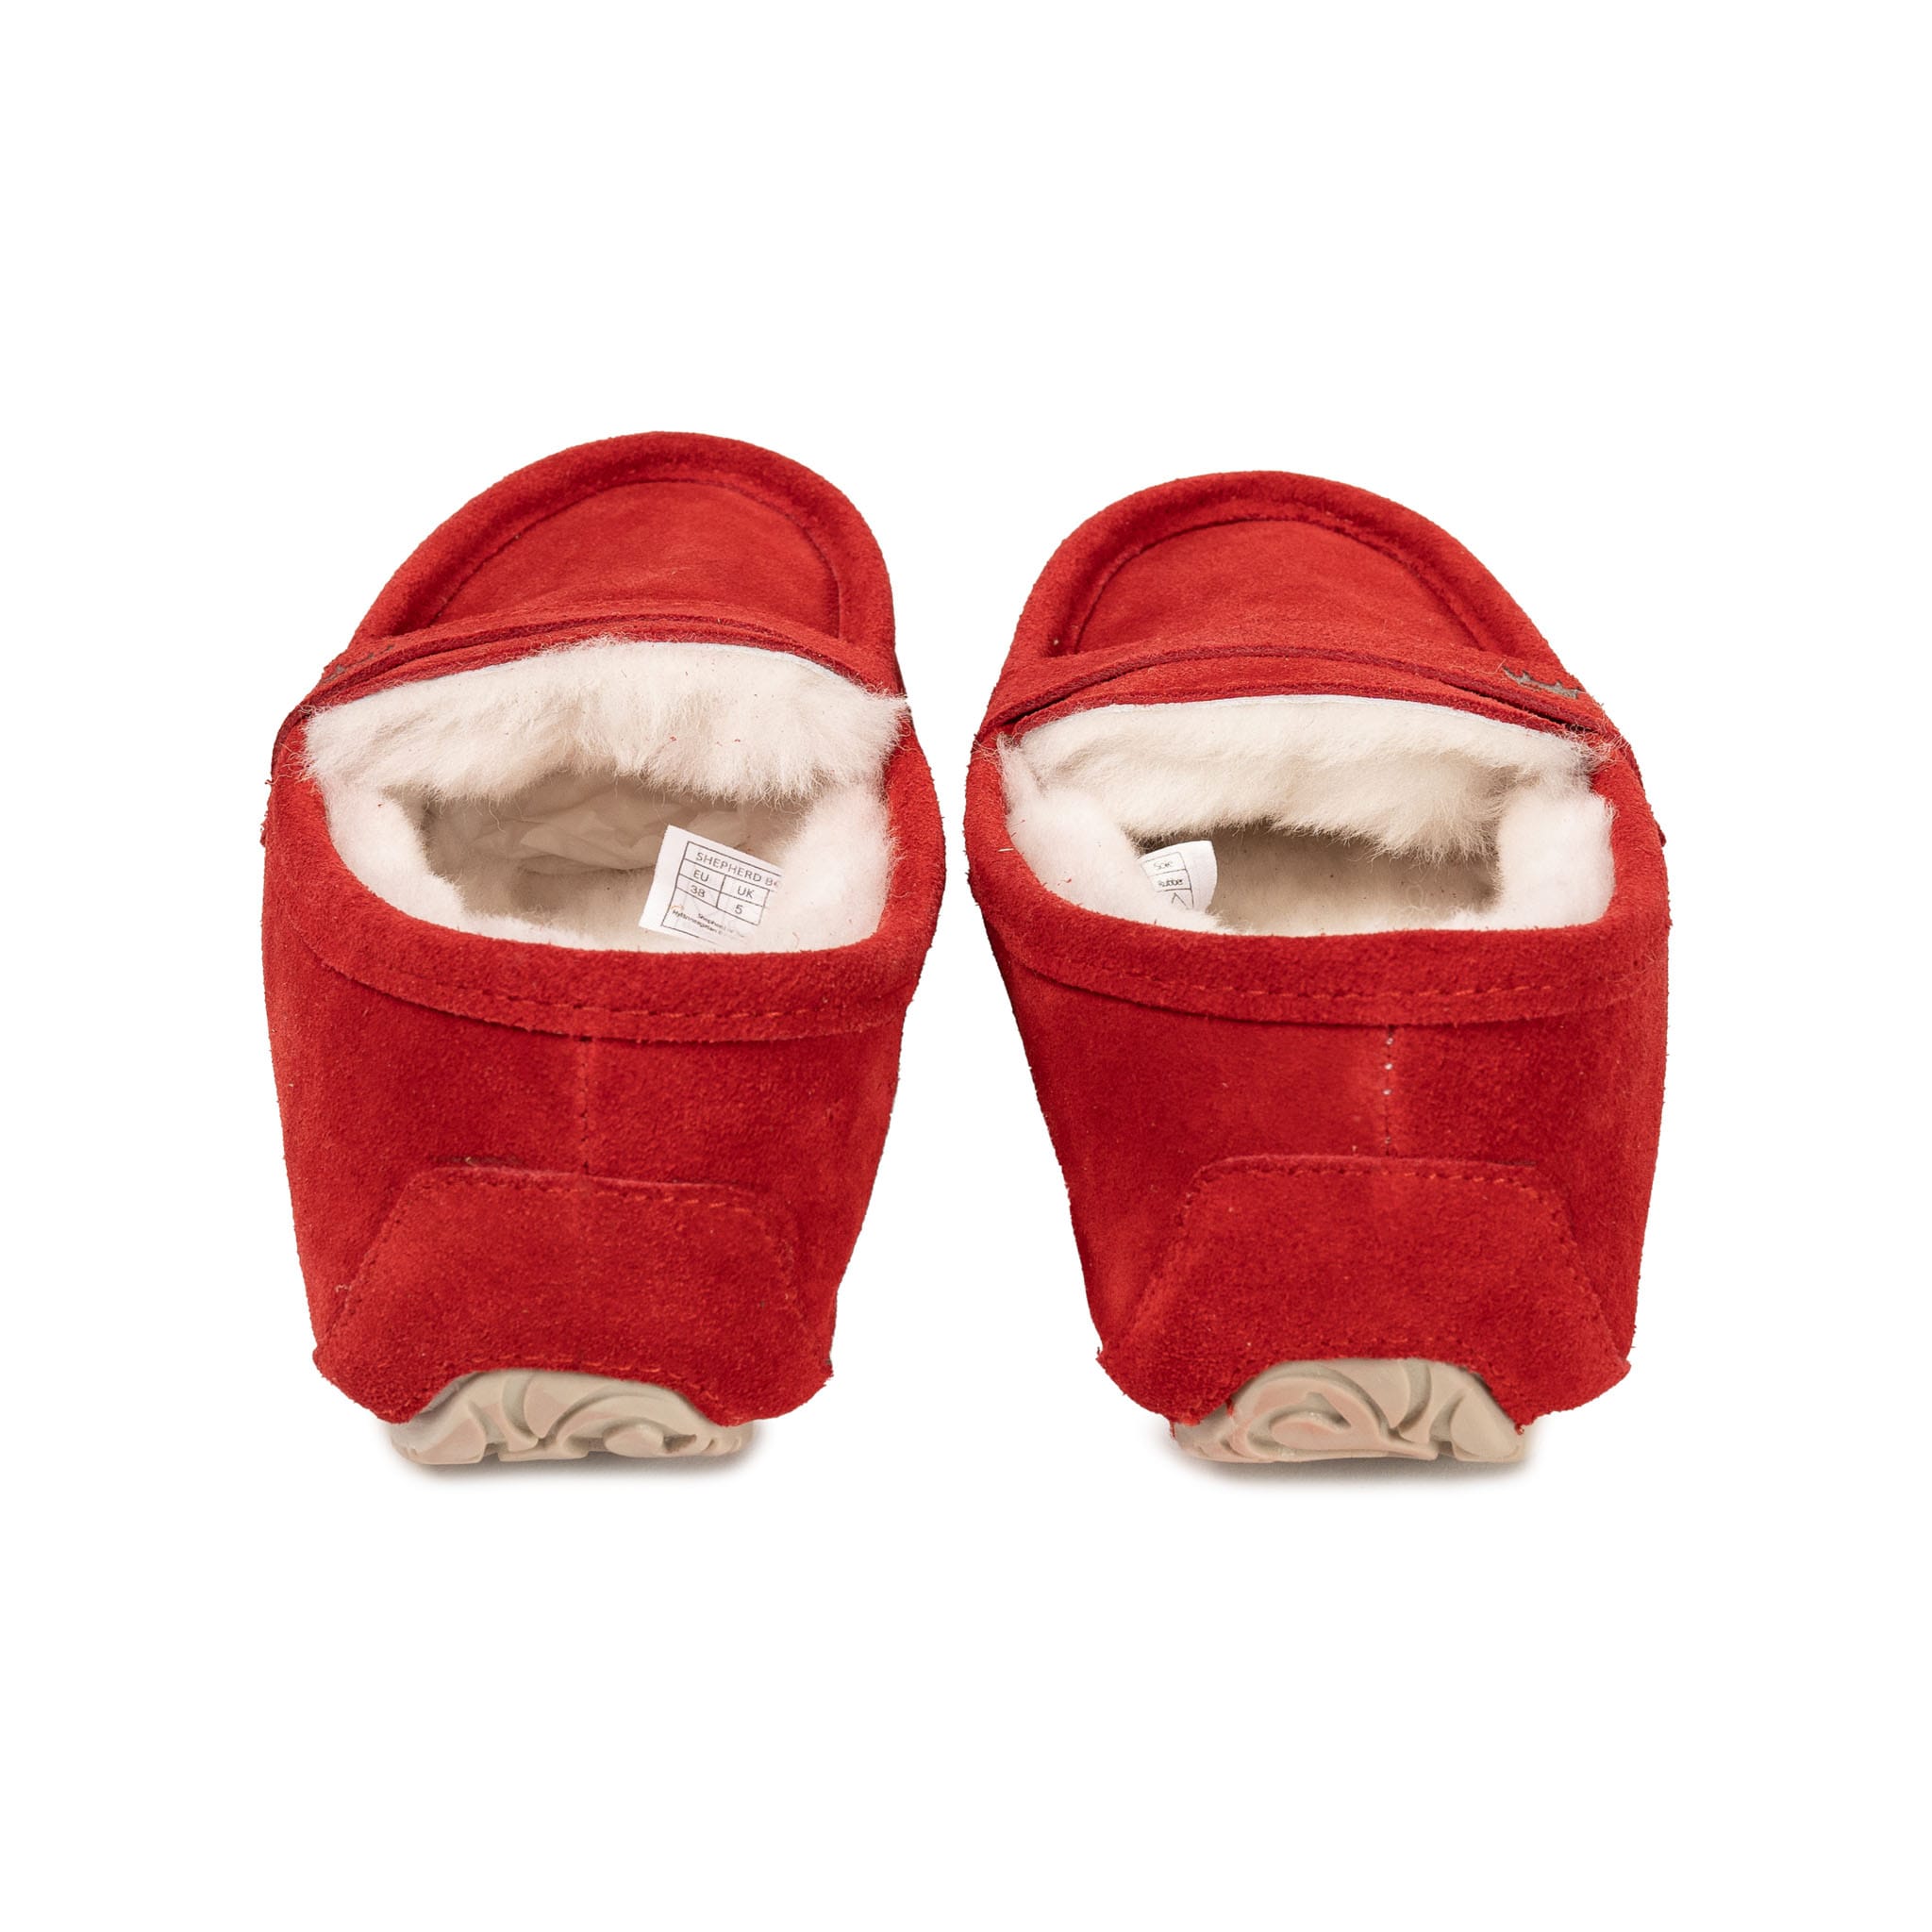 Denver slippers